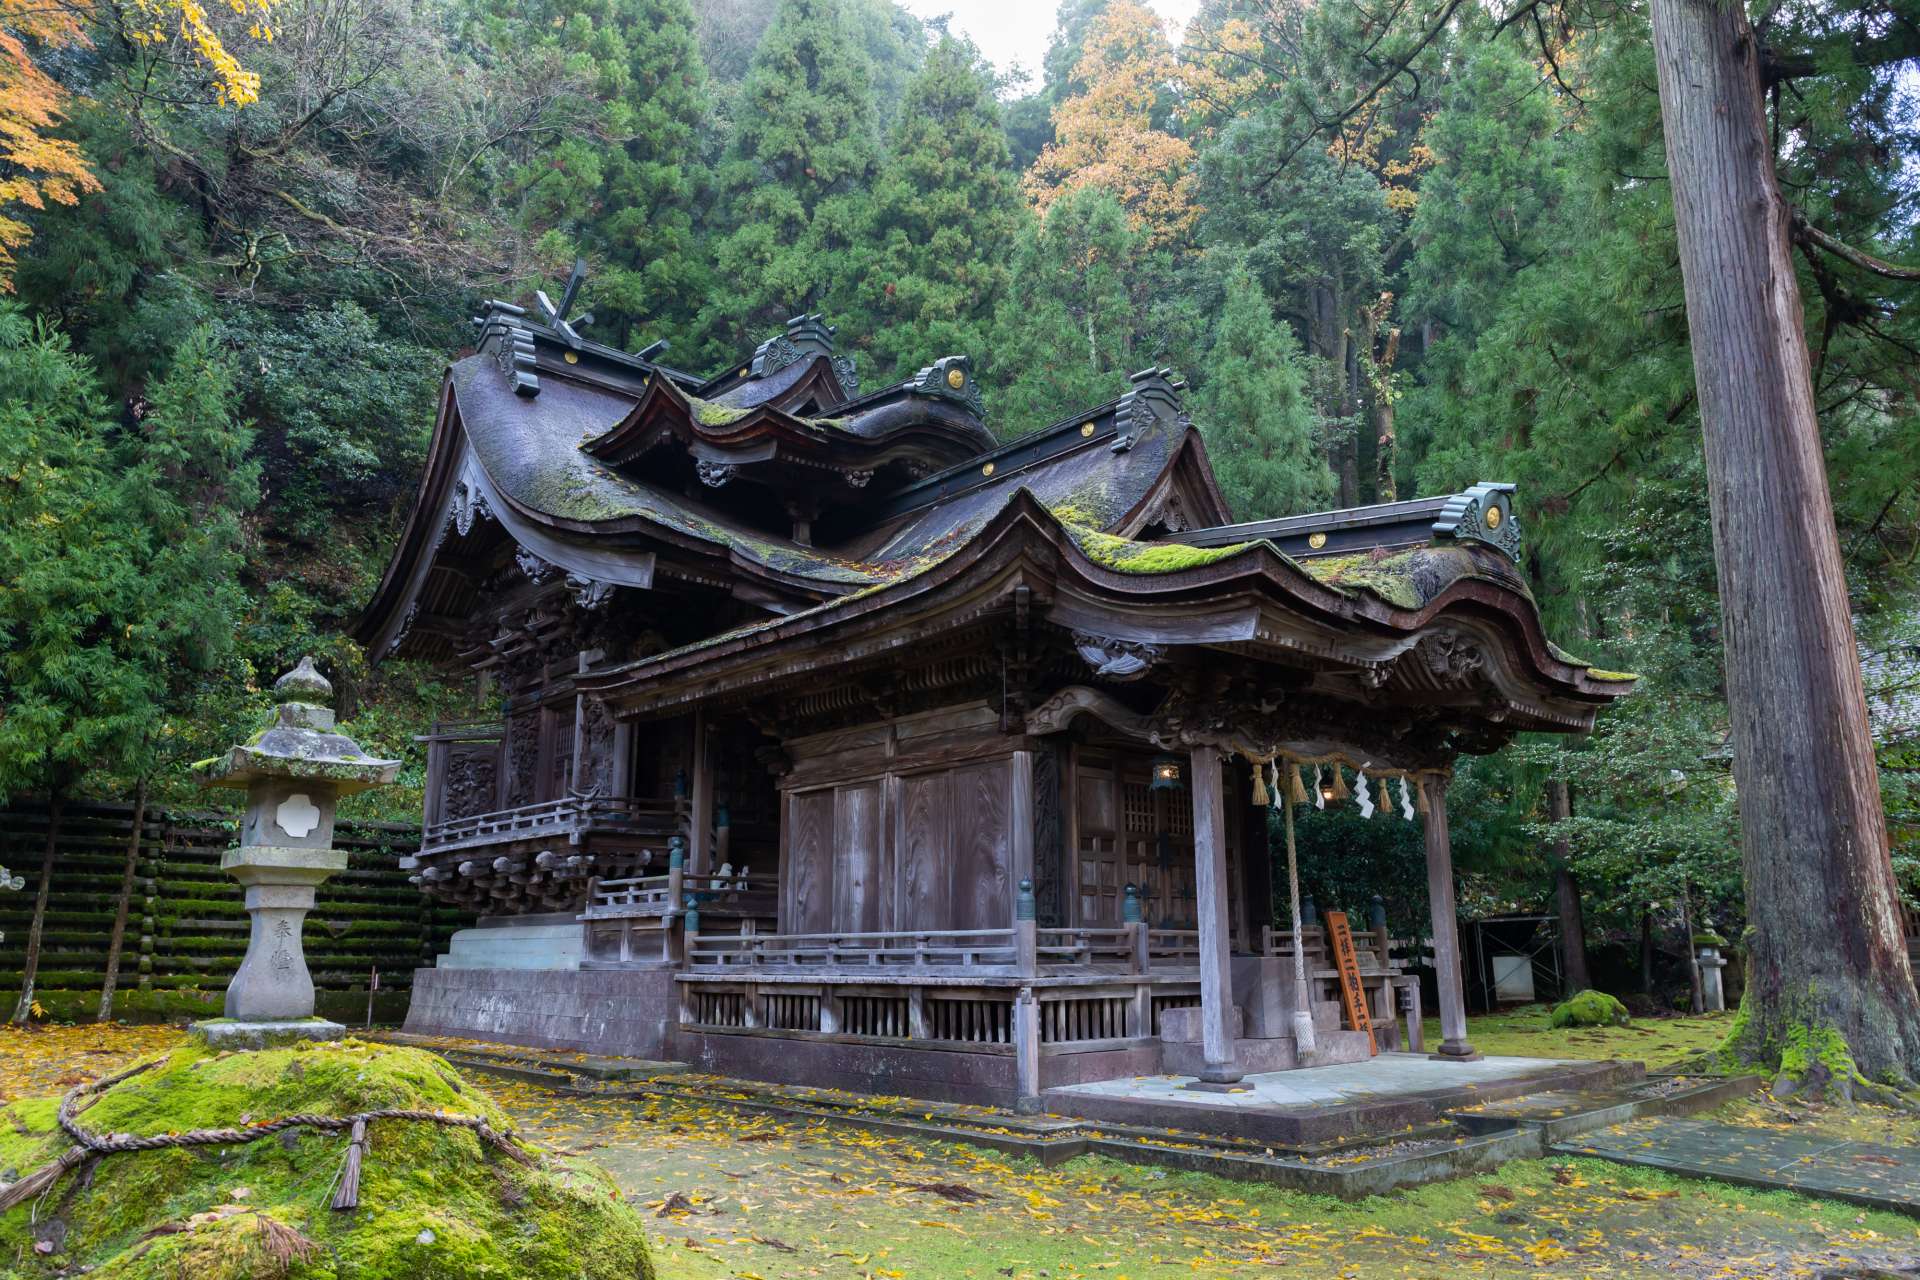 Shimomiya est situé dans la région d'Otaki. Le sanctuaire principal du sanctuaire d'Okata Otaki se trouve plus haut dans la montagne